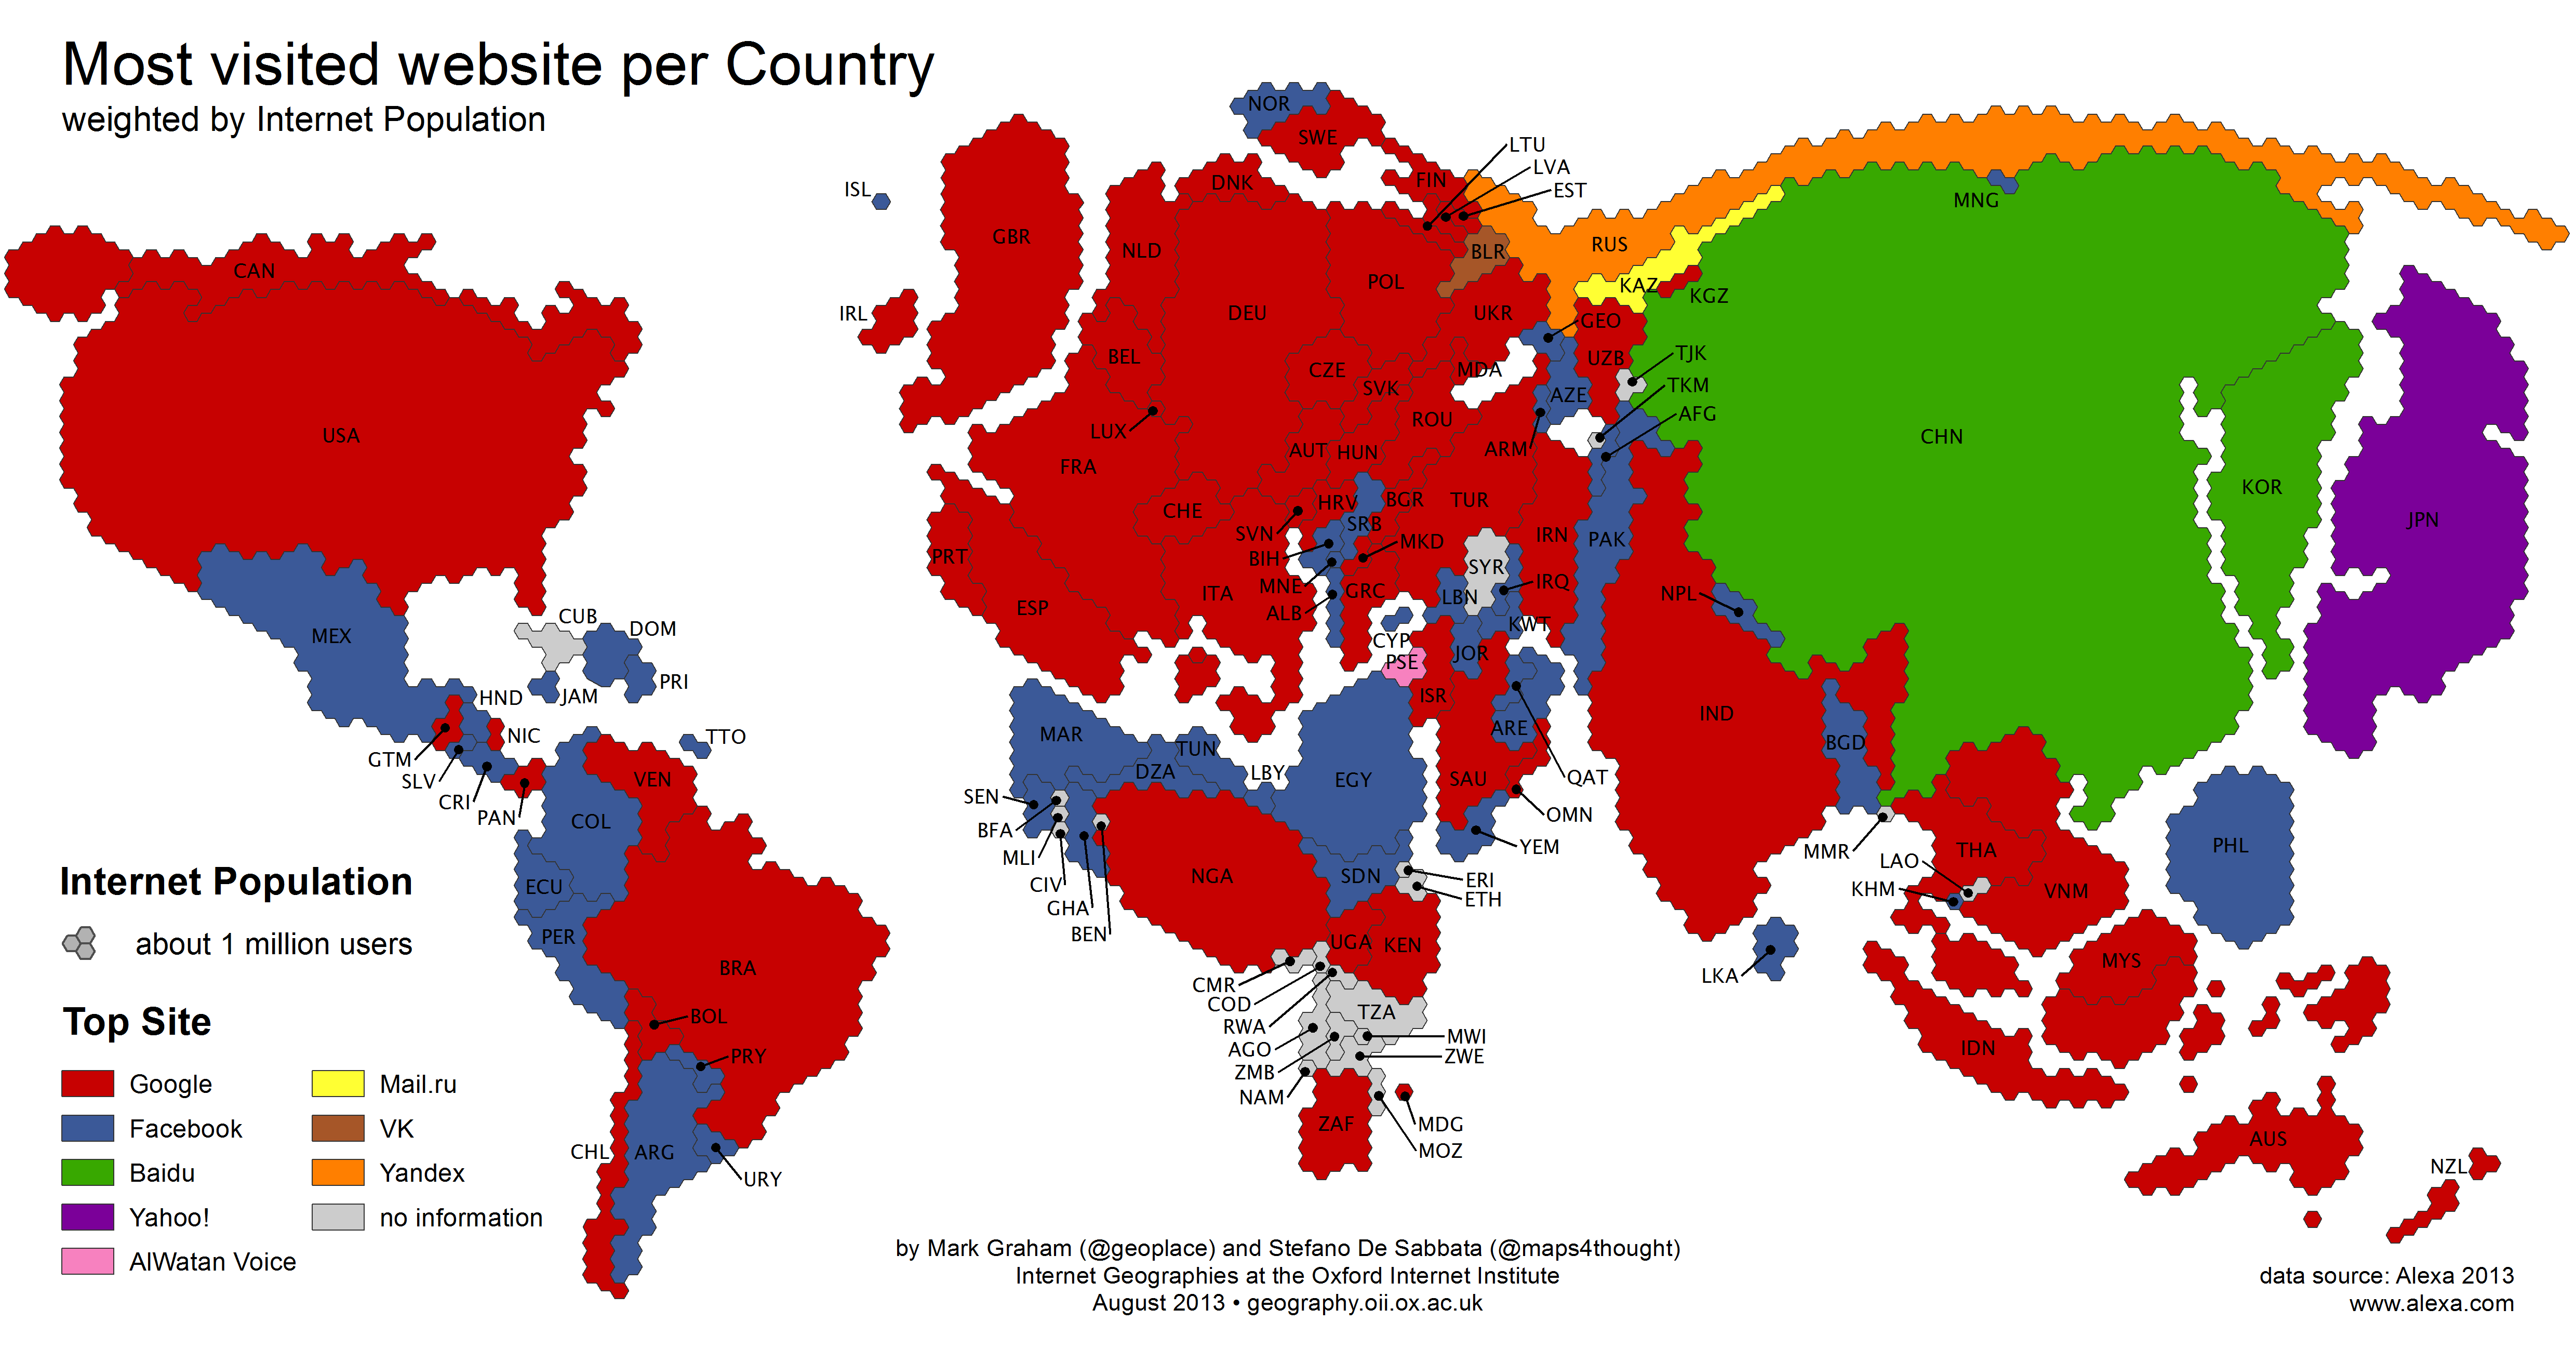 İnternet yoğunluğuna göre hazırlanmış dünyanın en popüler websiteleri haritası